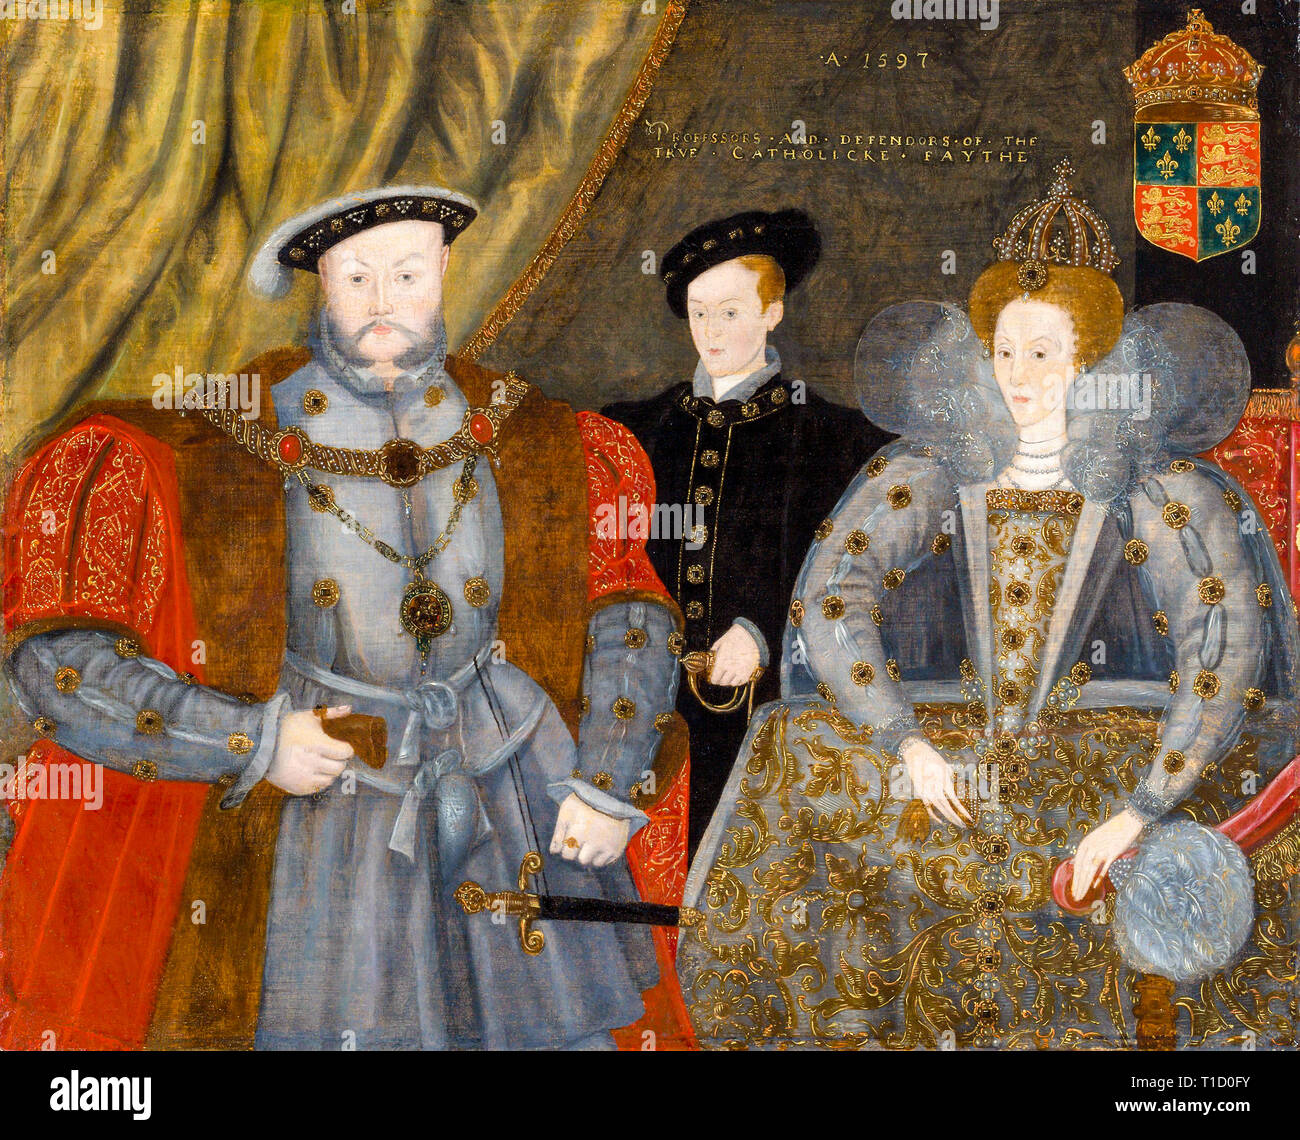 Henry VIII, Elizabeth I, and Edward VI, family group portrait painting, 1597 Stock Photo